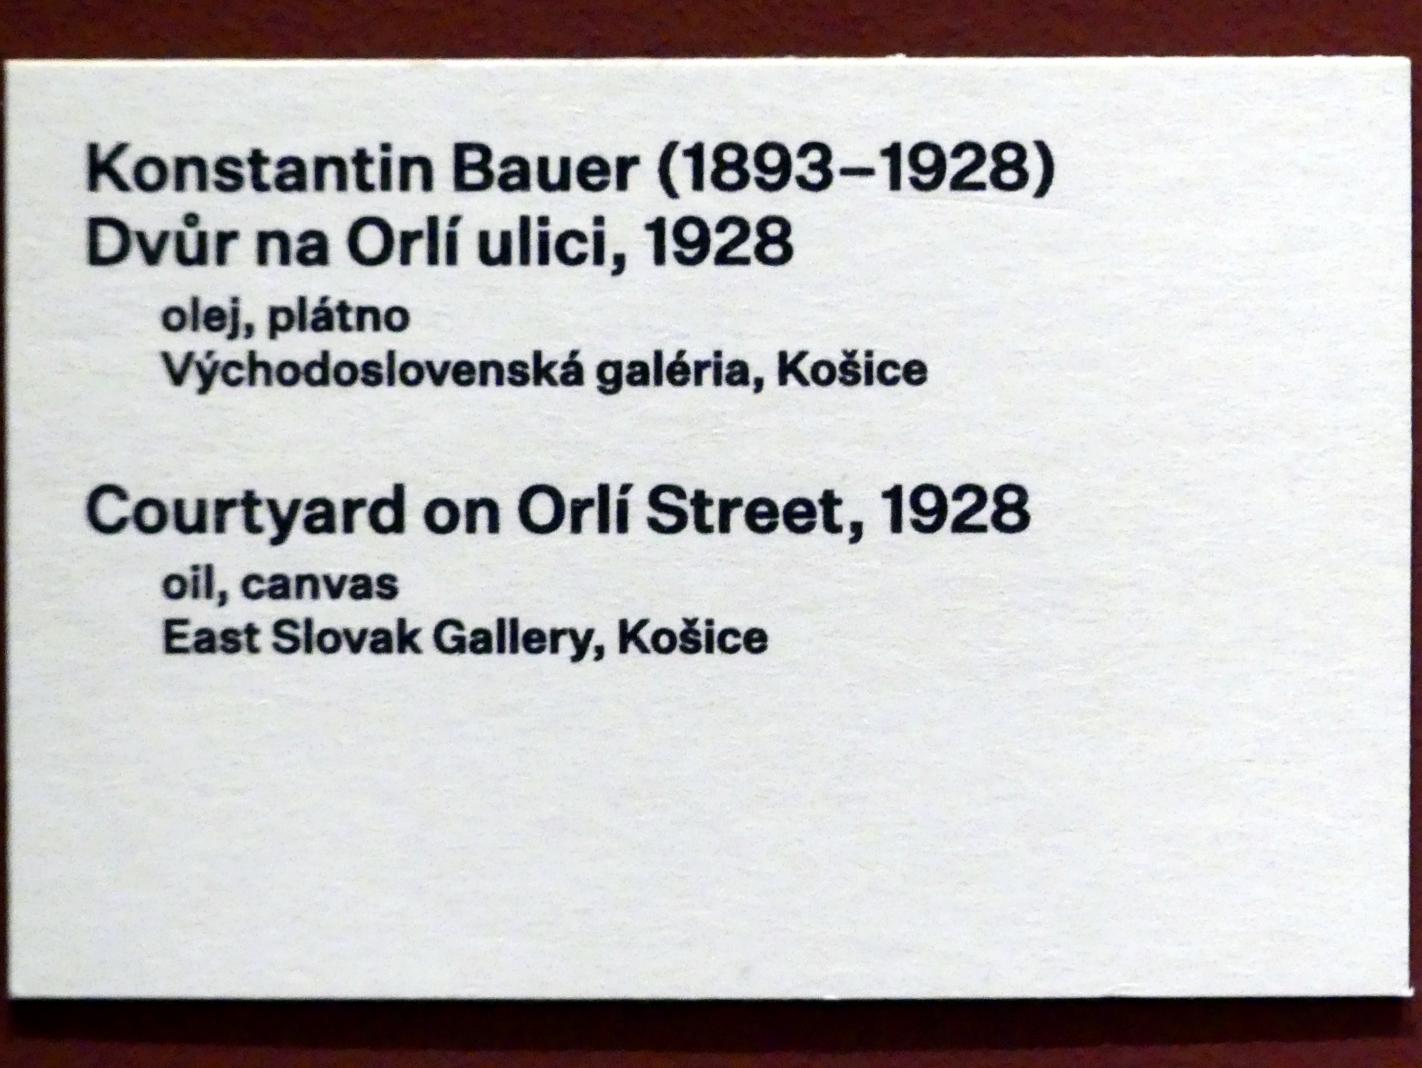 Konštantín Bauer (1927–1928), Hof an der Orlí-Straße, Prag, Nationalgalerie im Messepalast, 1918-1939, Saal 17, 1928, Bild 2/2